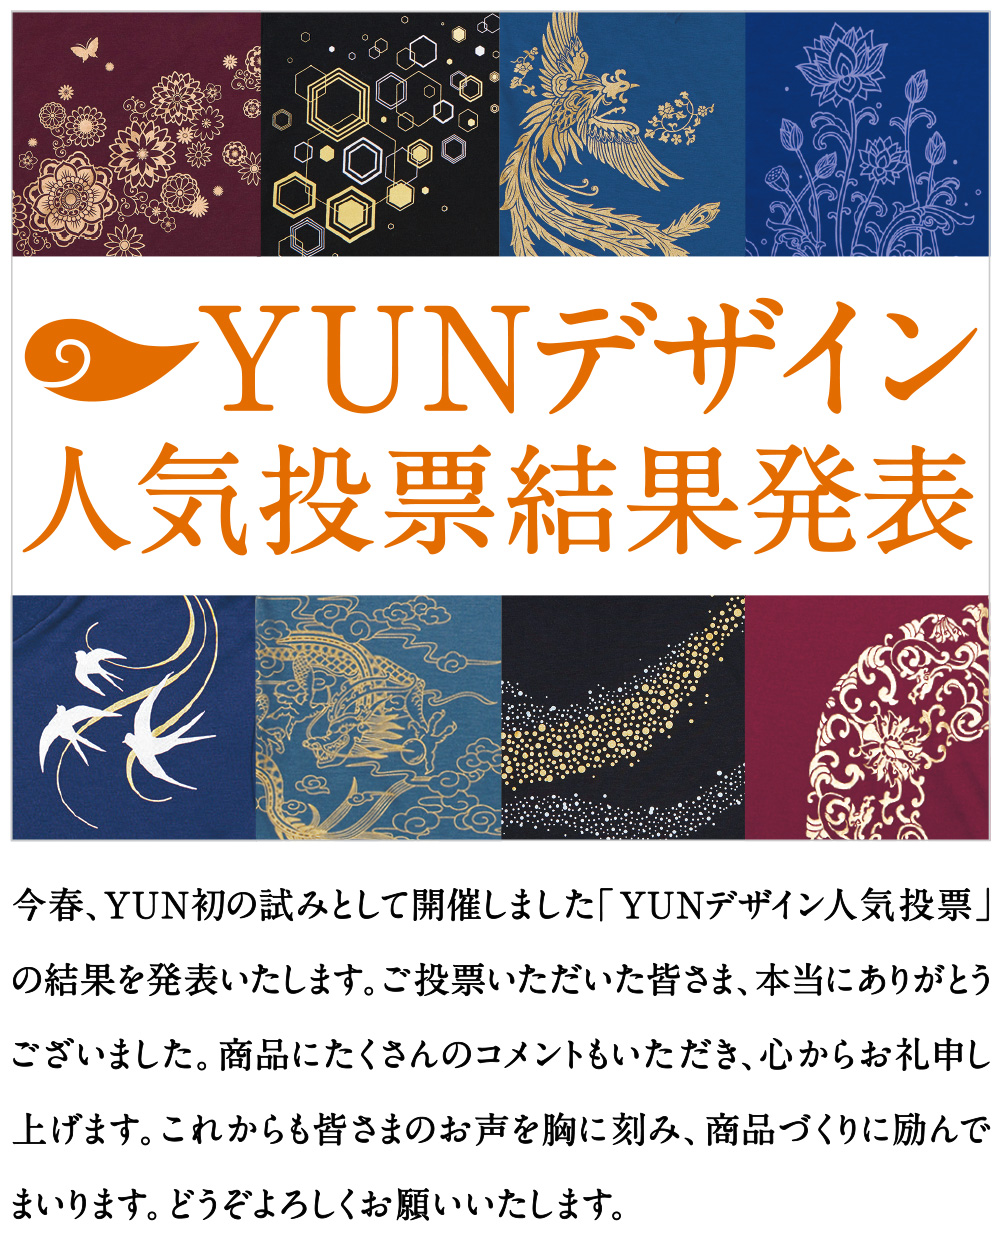 YUN Design Award